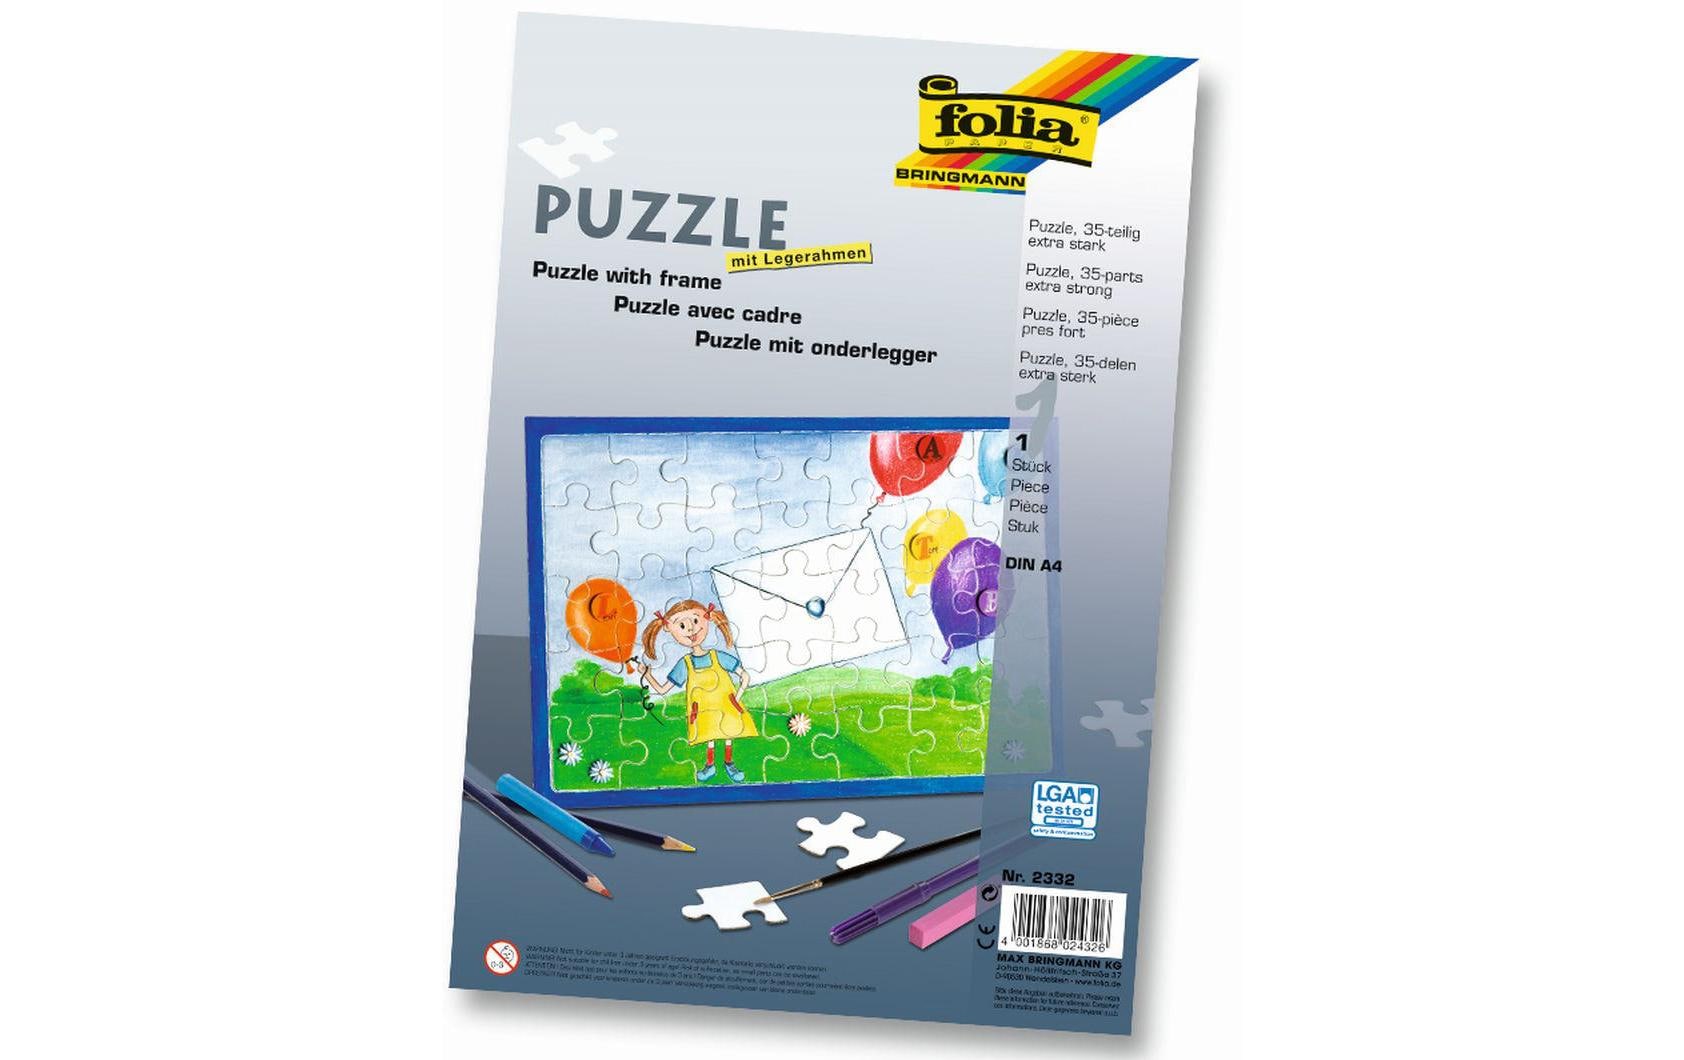 Folia Papp-Puzzle A4 mit Legerahmen, 1 Stück